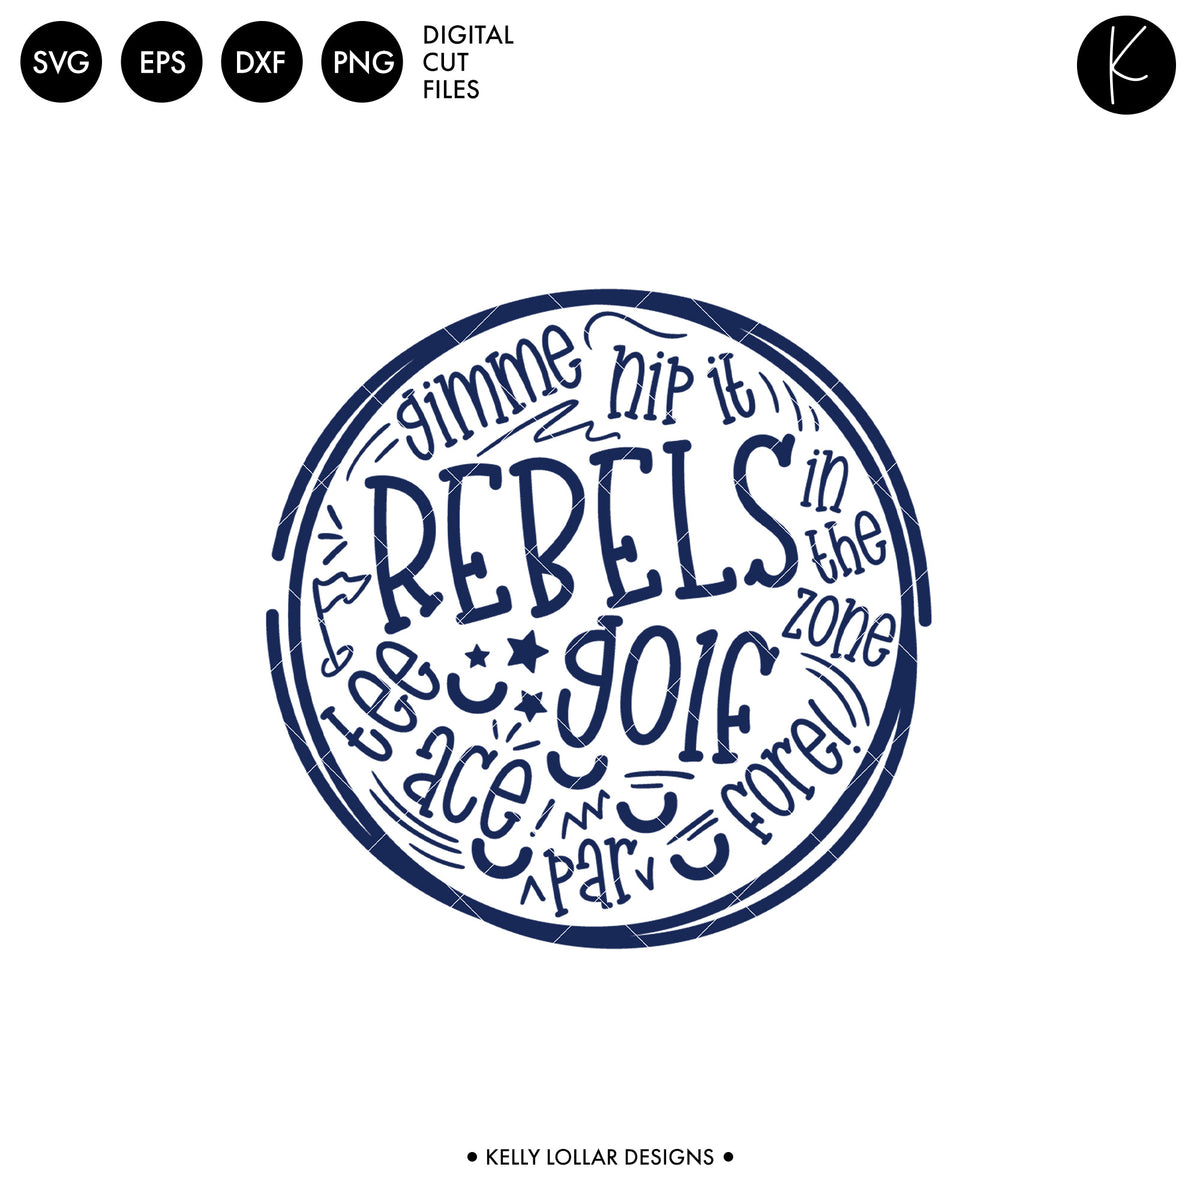 Rebels Golf Bundle | SVG DXF EPS PNG Cut Files